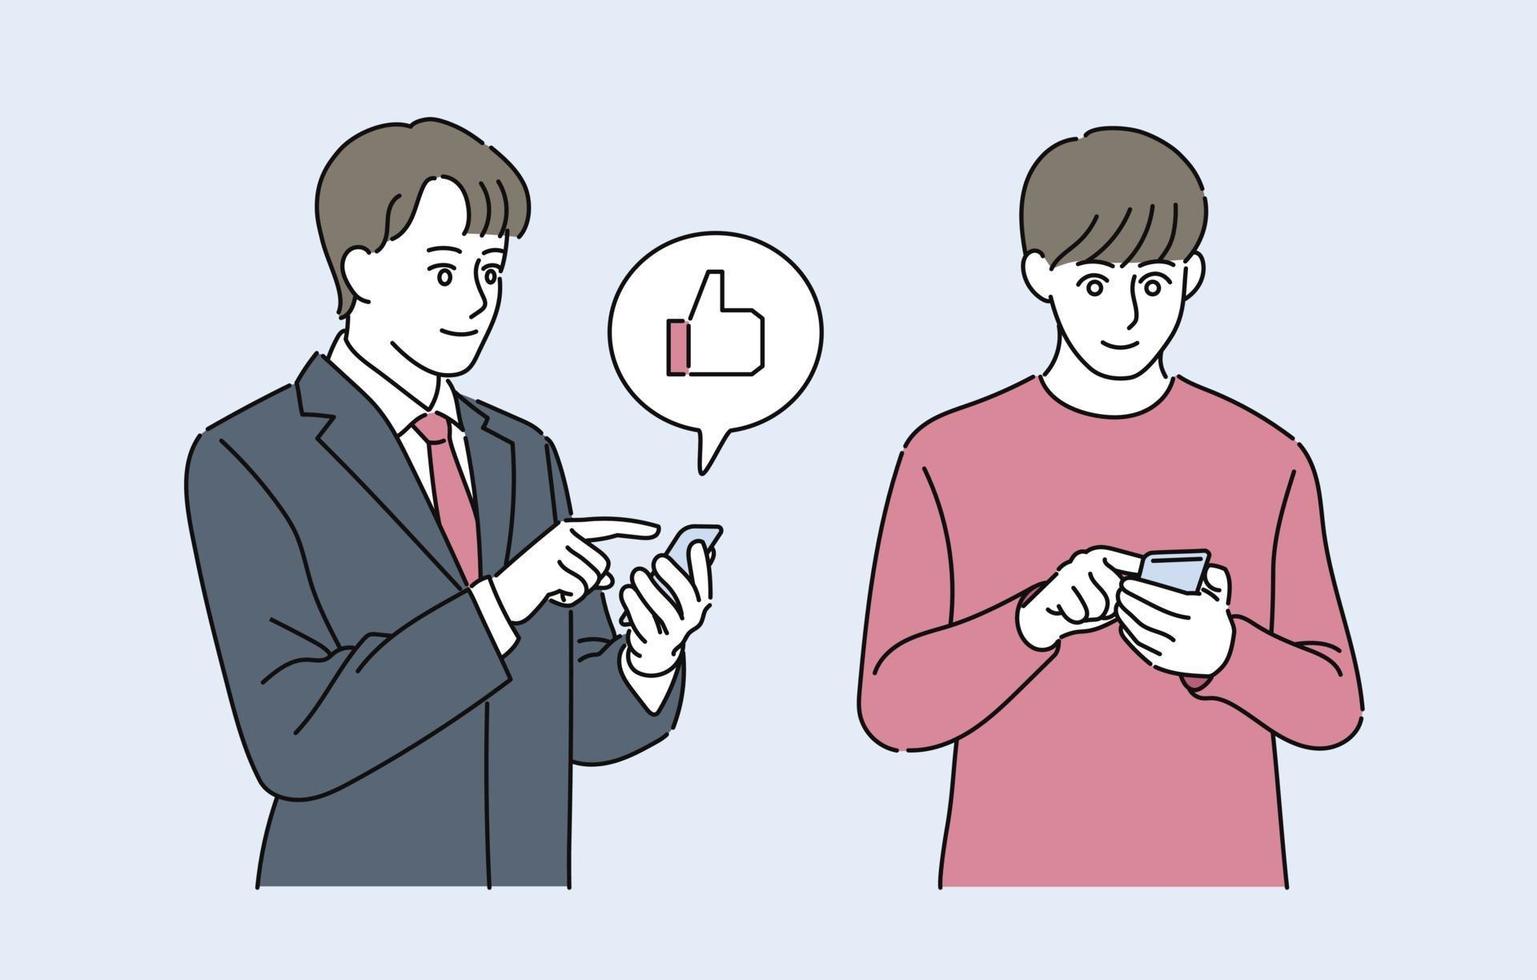 un hombre de traje y un hombre de estilo casual están mirando un teléfono celular. ilustraciones de diseño de vectores de estilo dibujado a mano.